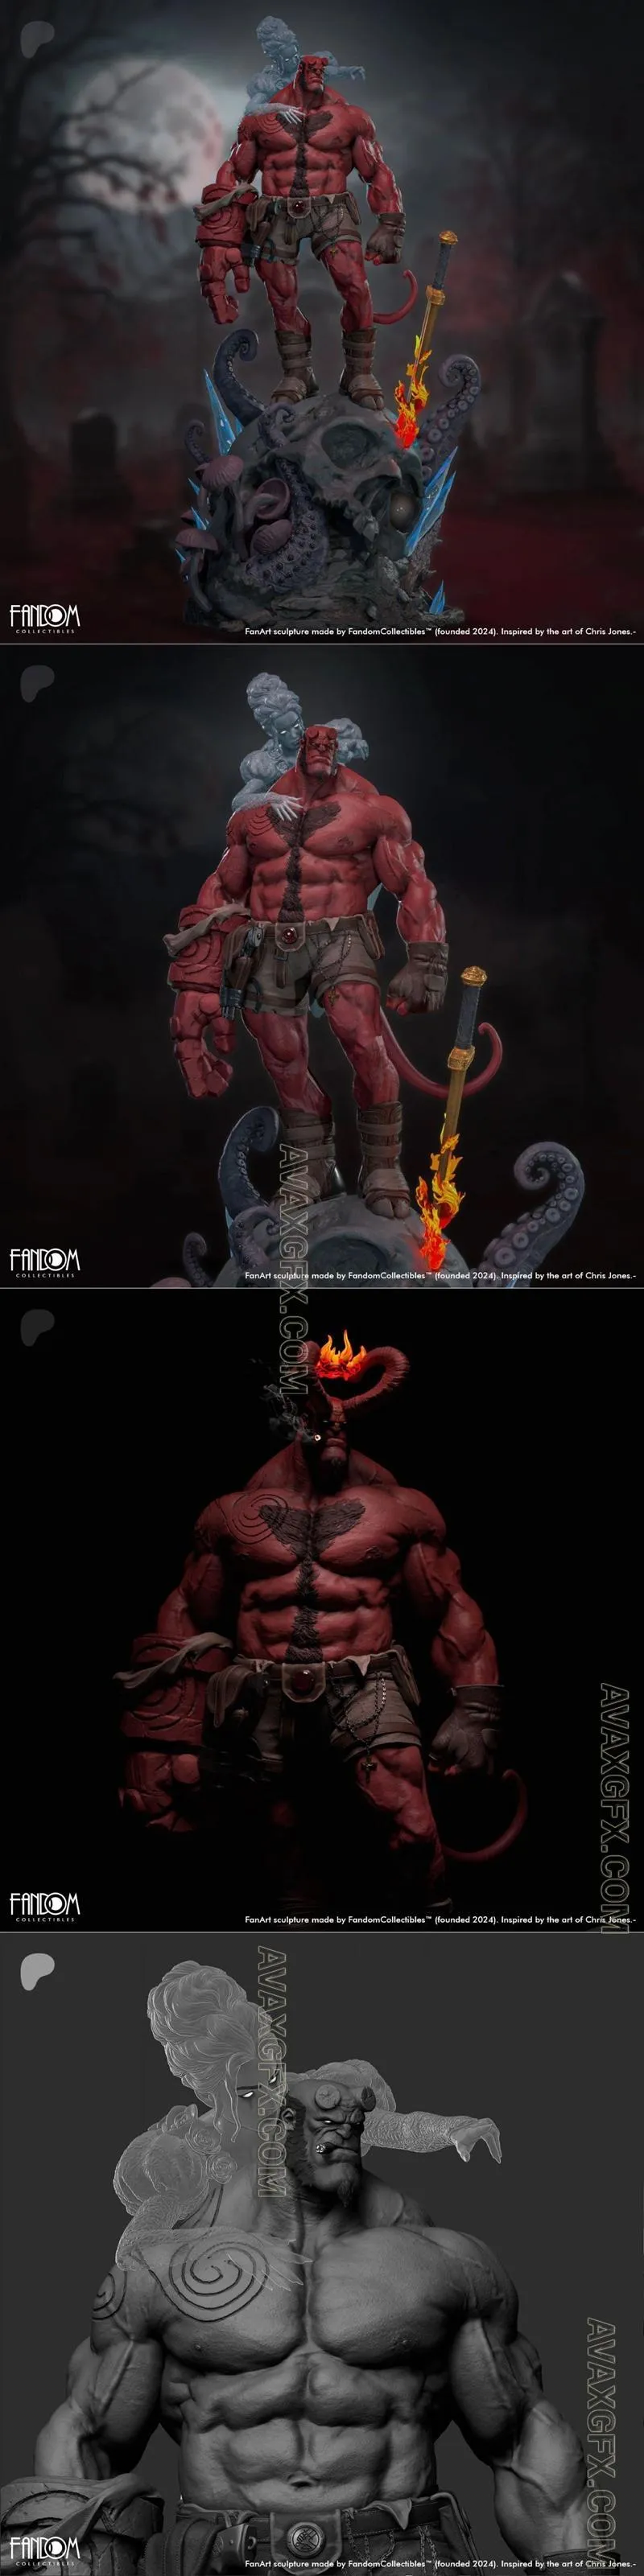 Hellboy Delivery - STL 3D Model